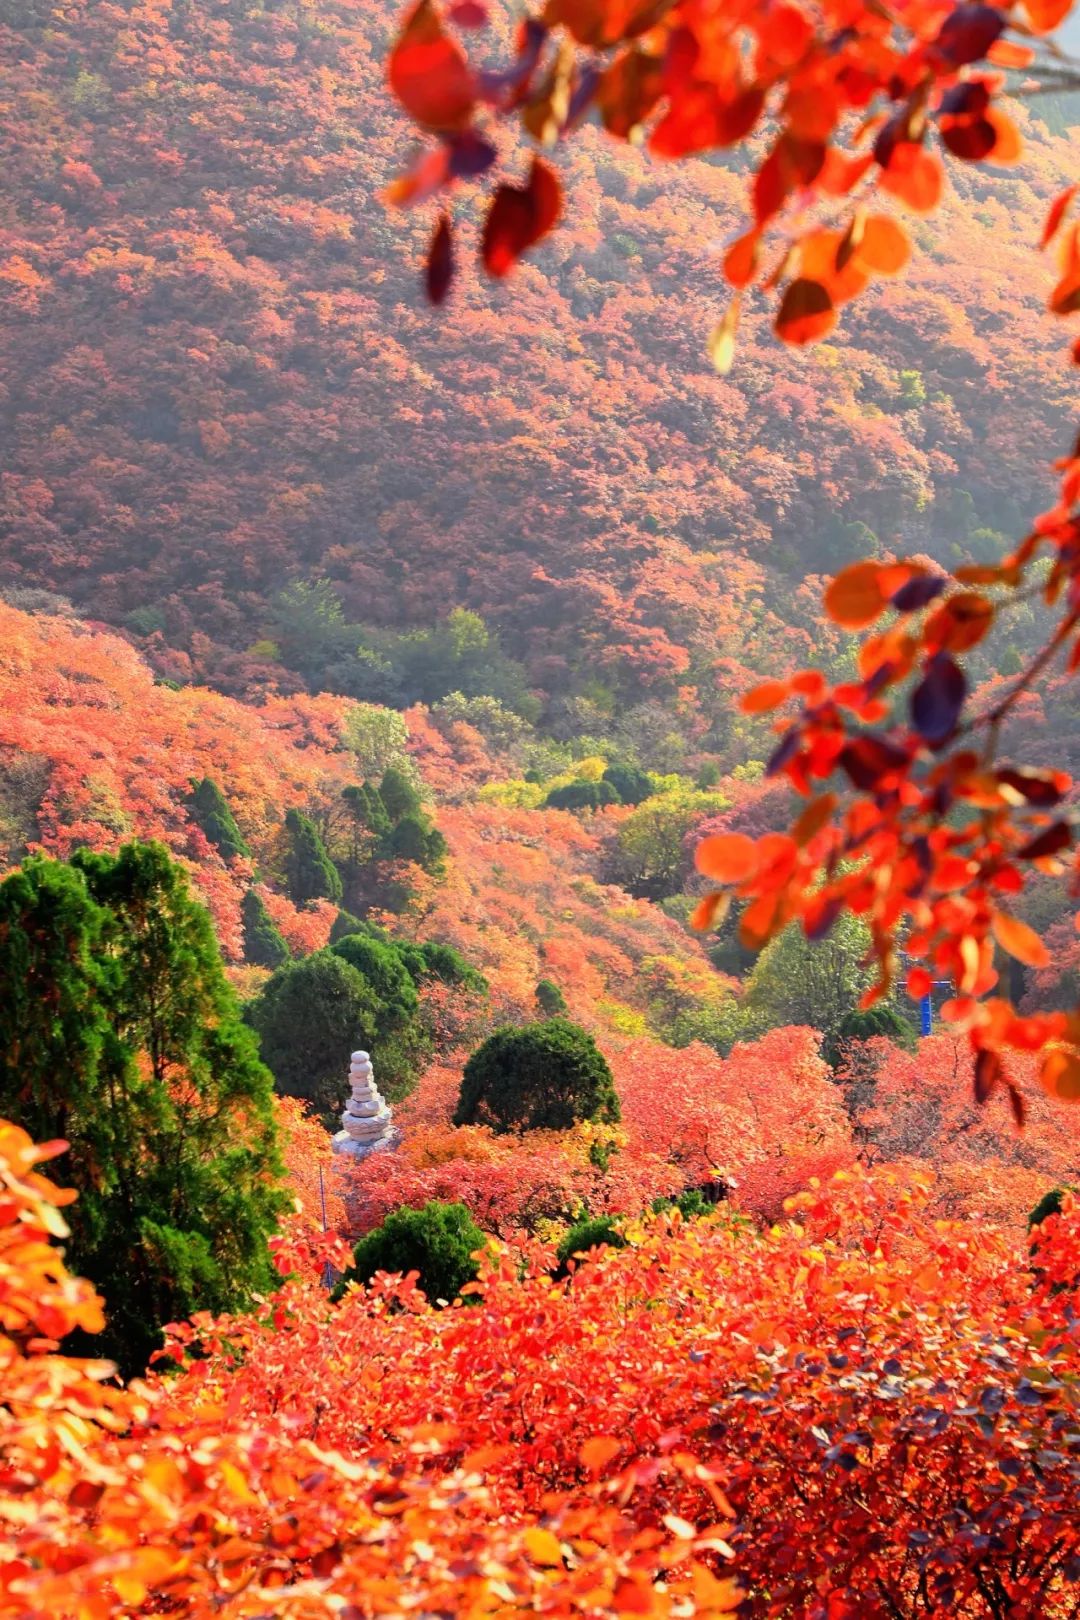 这个秋天就想和你一起去石门坊赏红叶